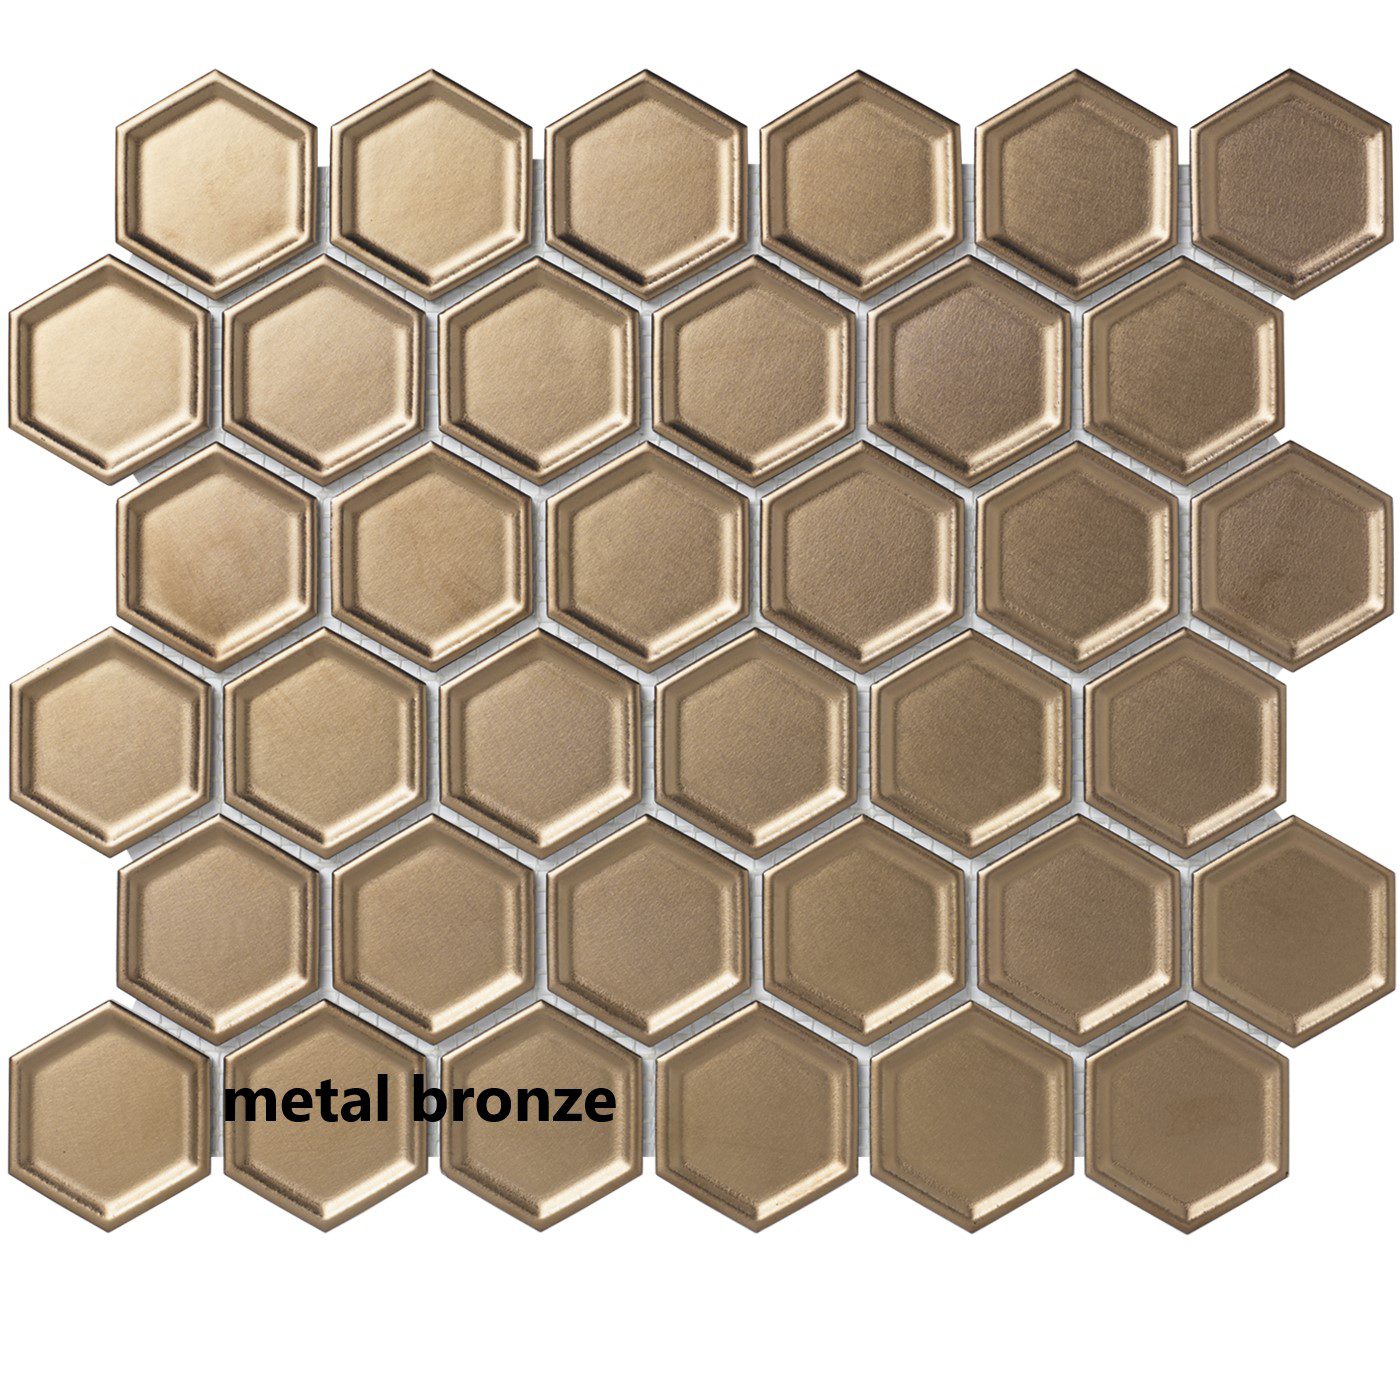 metal bronze